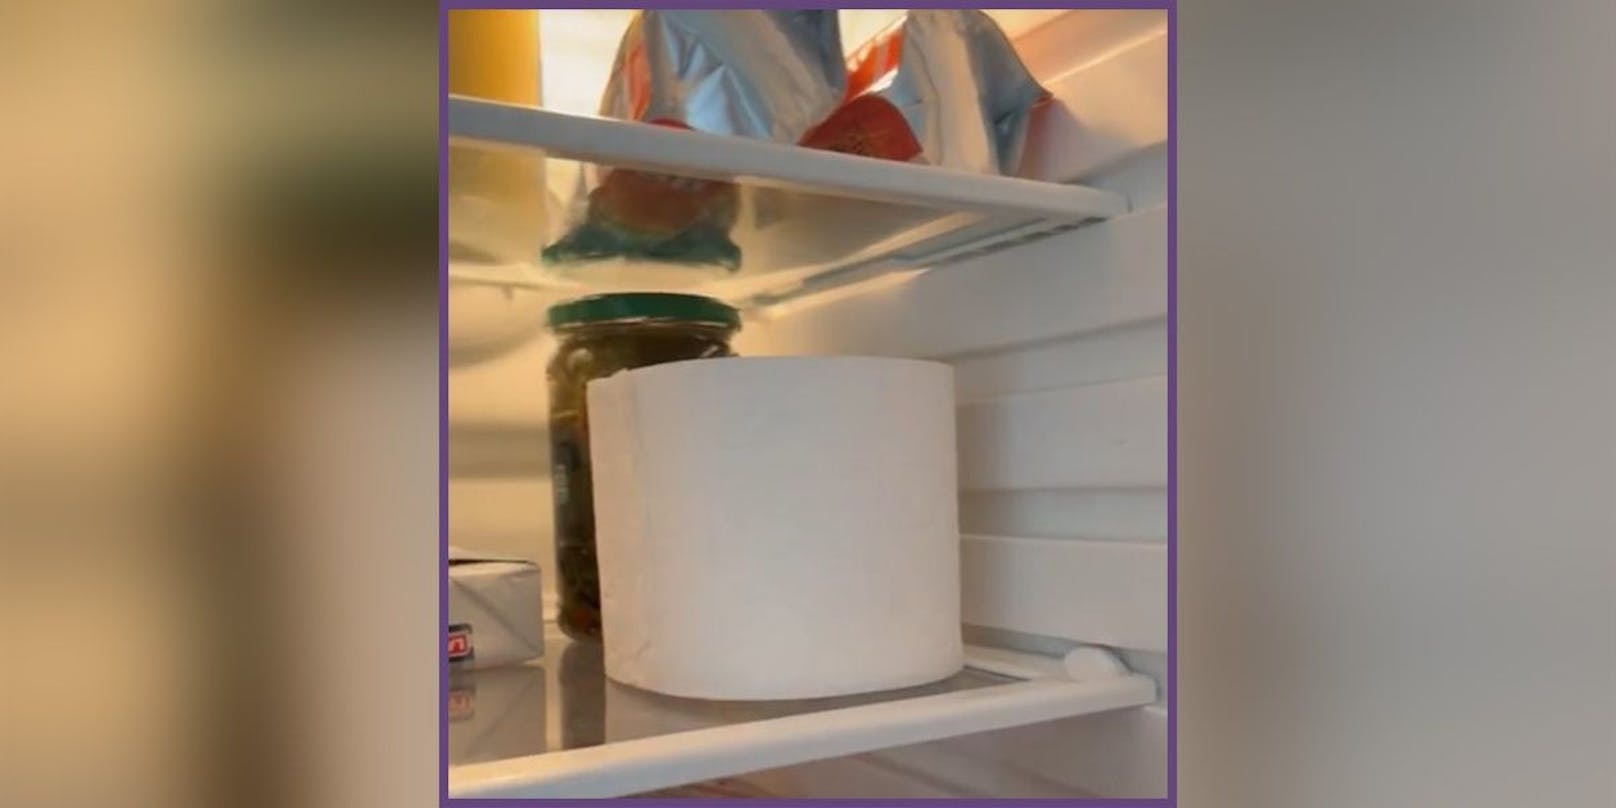 Eine Klopapier-Rolle im Kühlschrank, was soll das denn bringen?